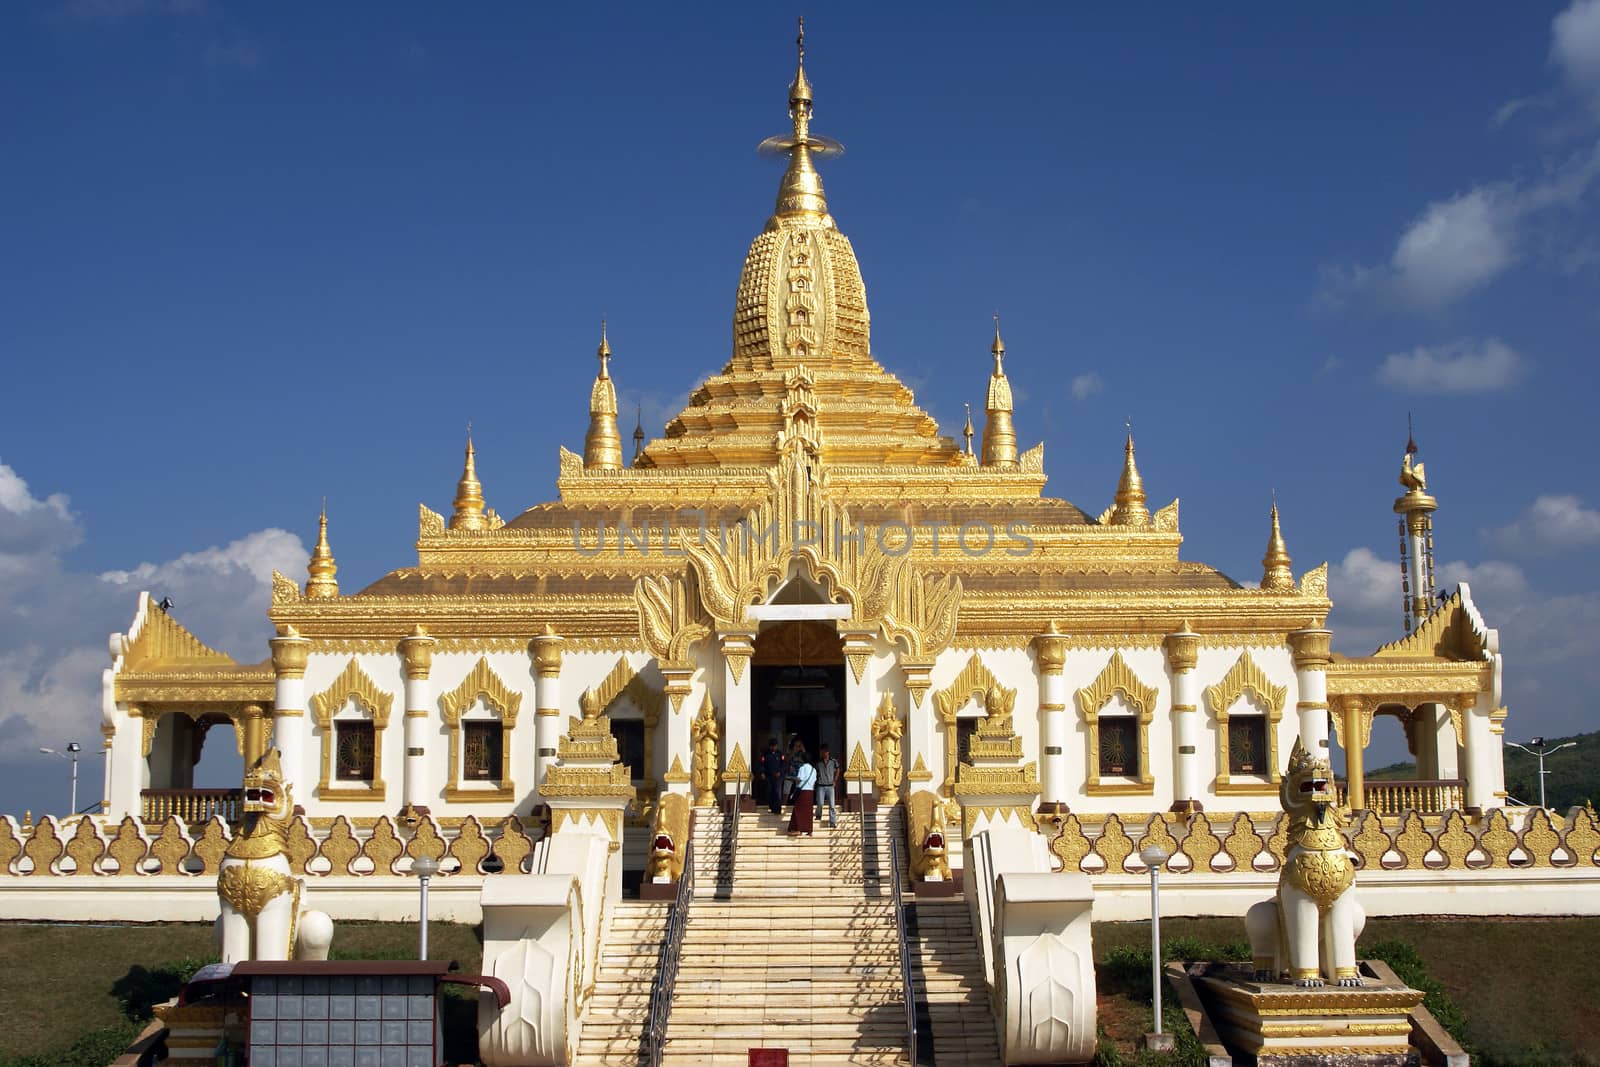 Pagoda, Pyin Oo Lwin, Myanmar